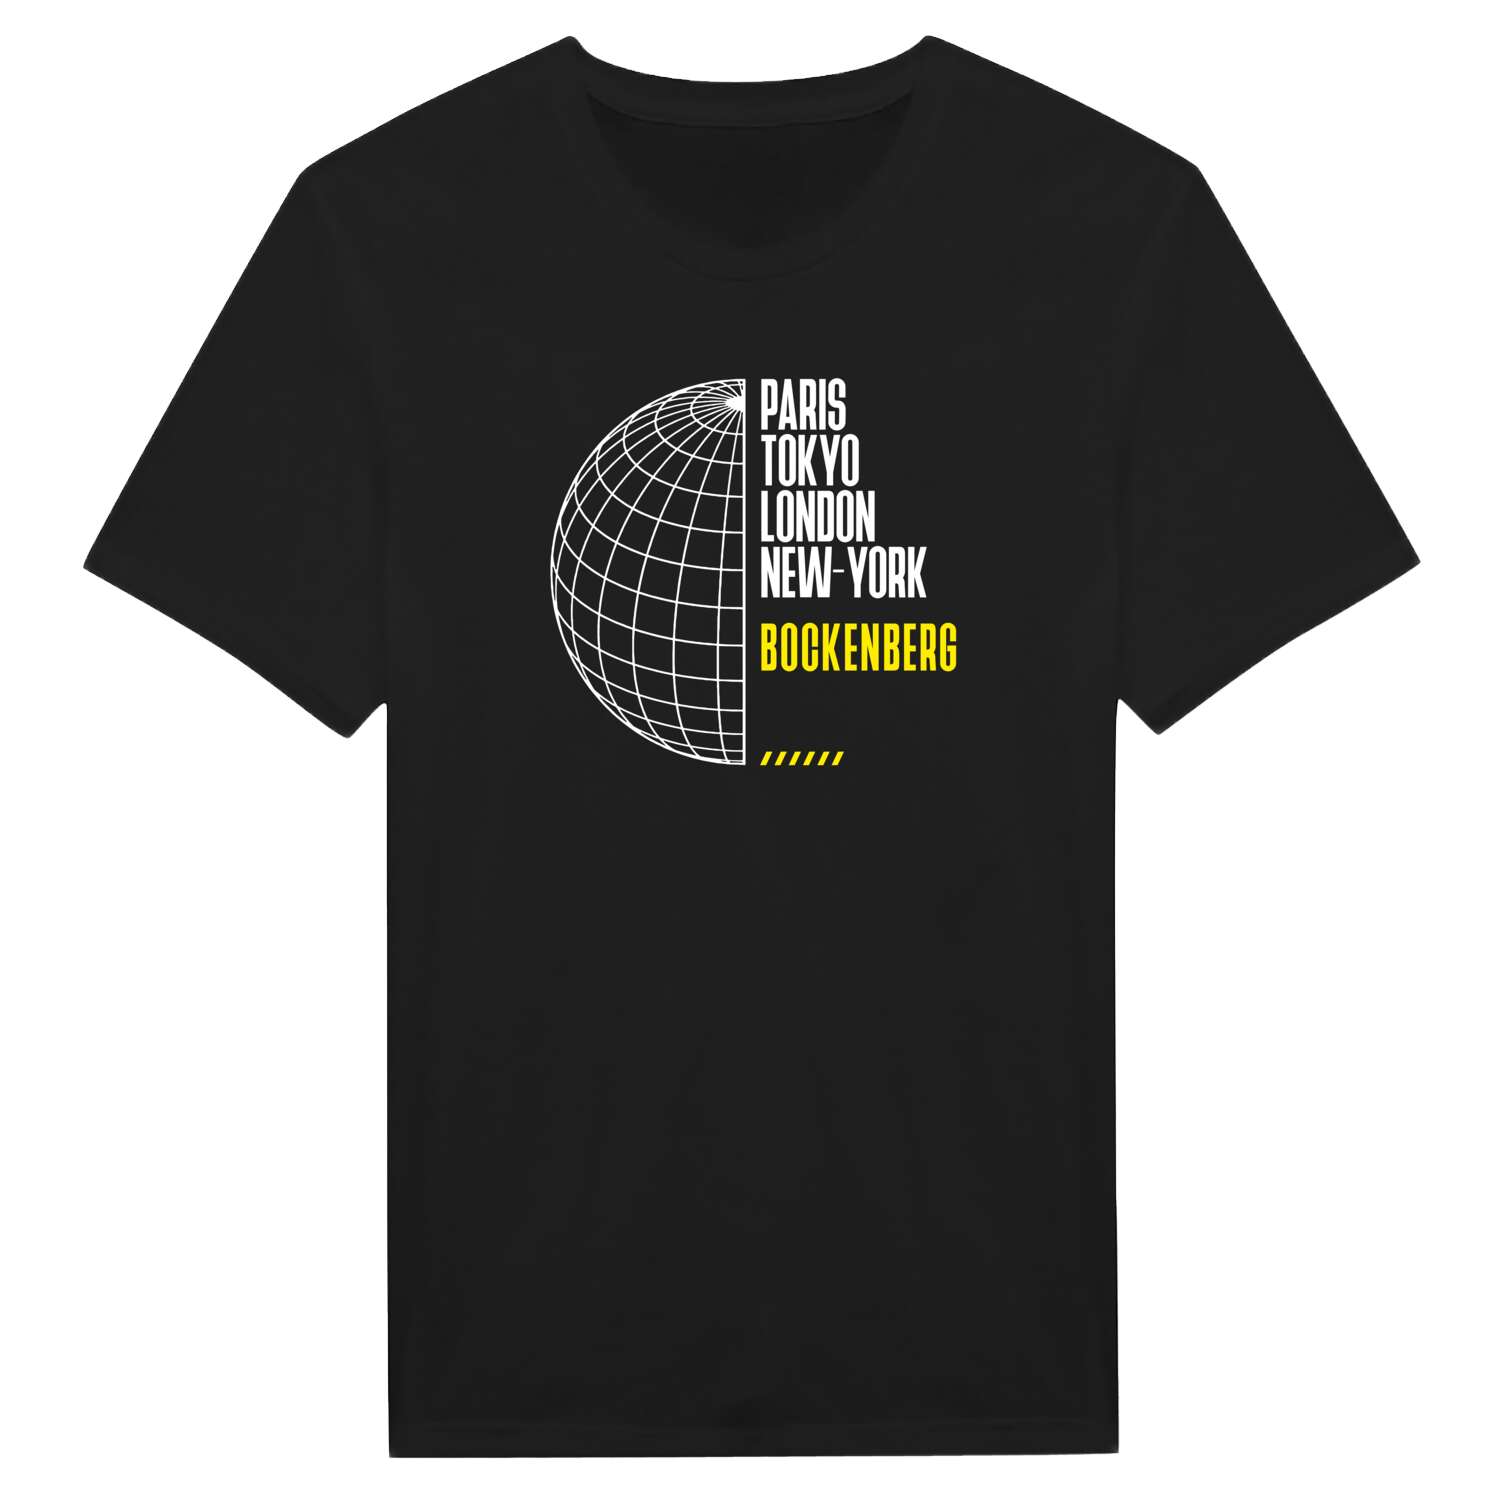 Bockenberg T-Shirt »Paris Tokyo London«